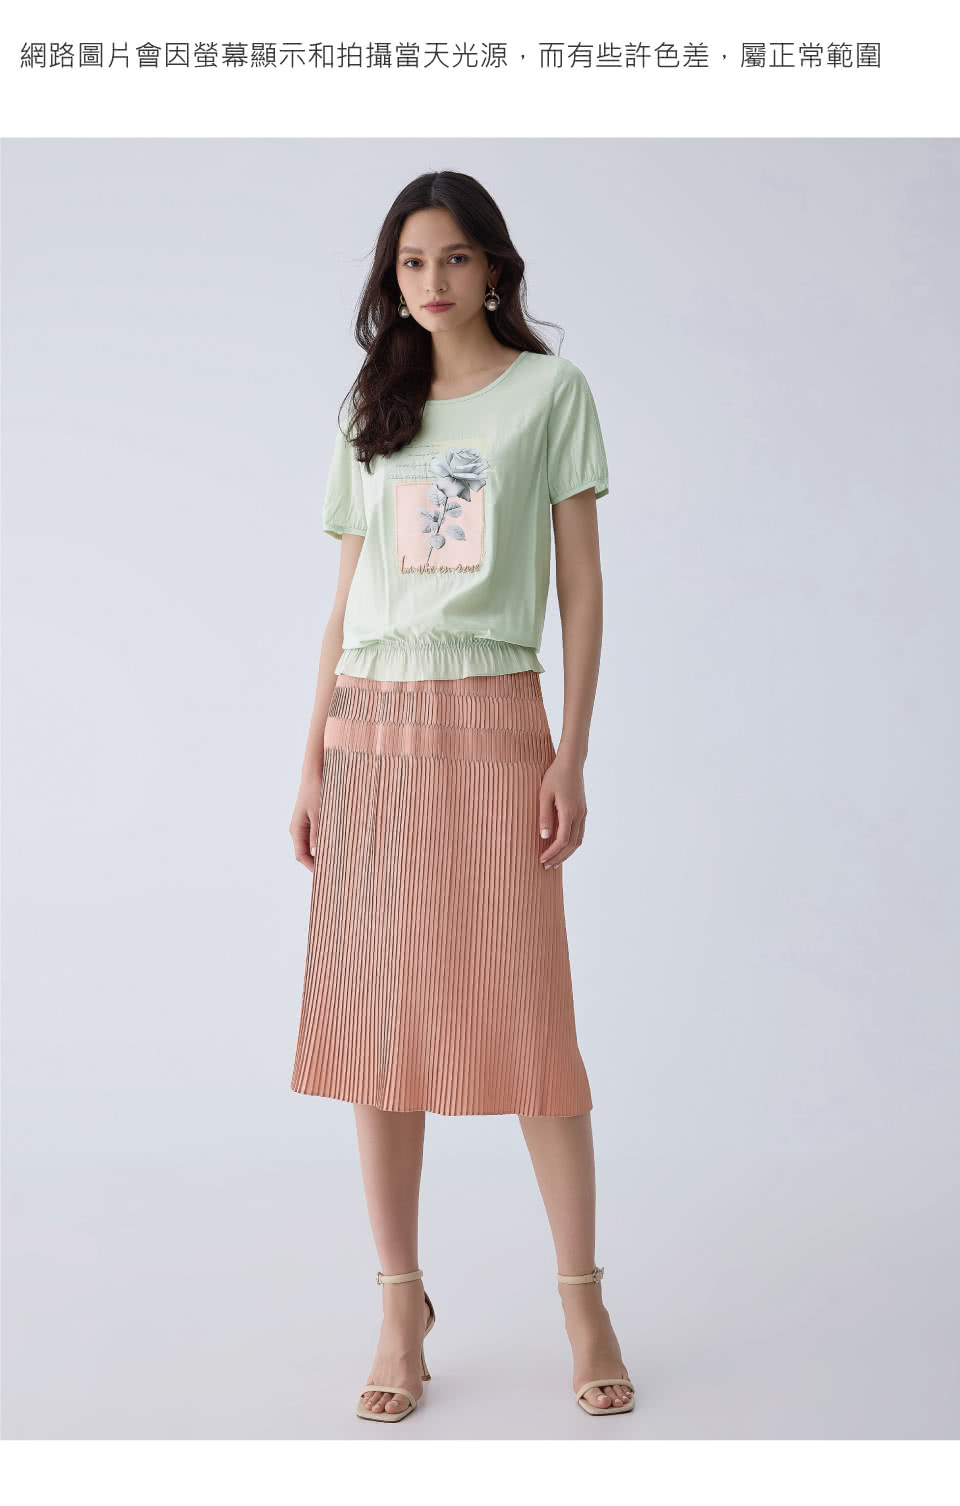 ILEY 伊蕾 玫瑰刺繡貼布造型上衣(淺綠色；M-XL；12